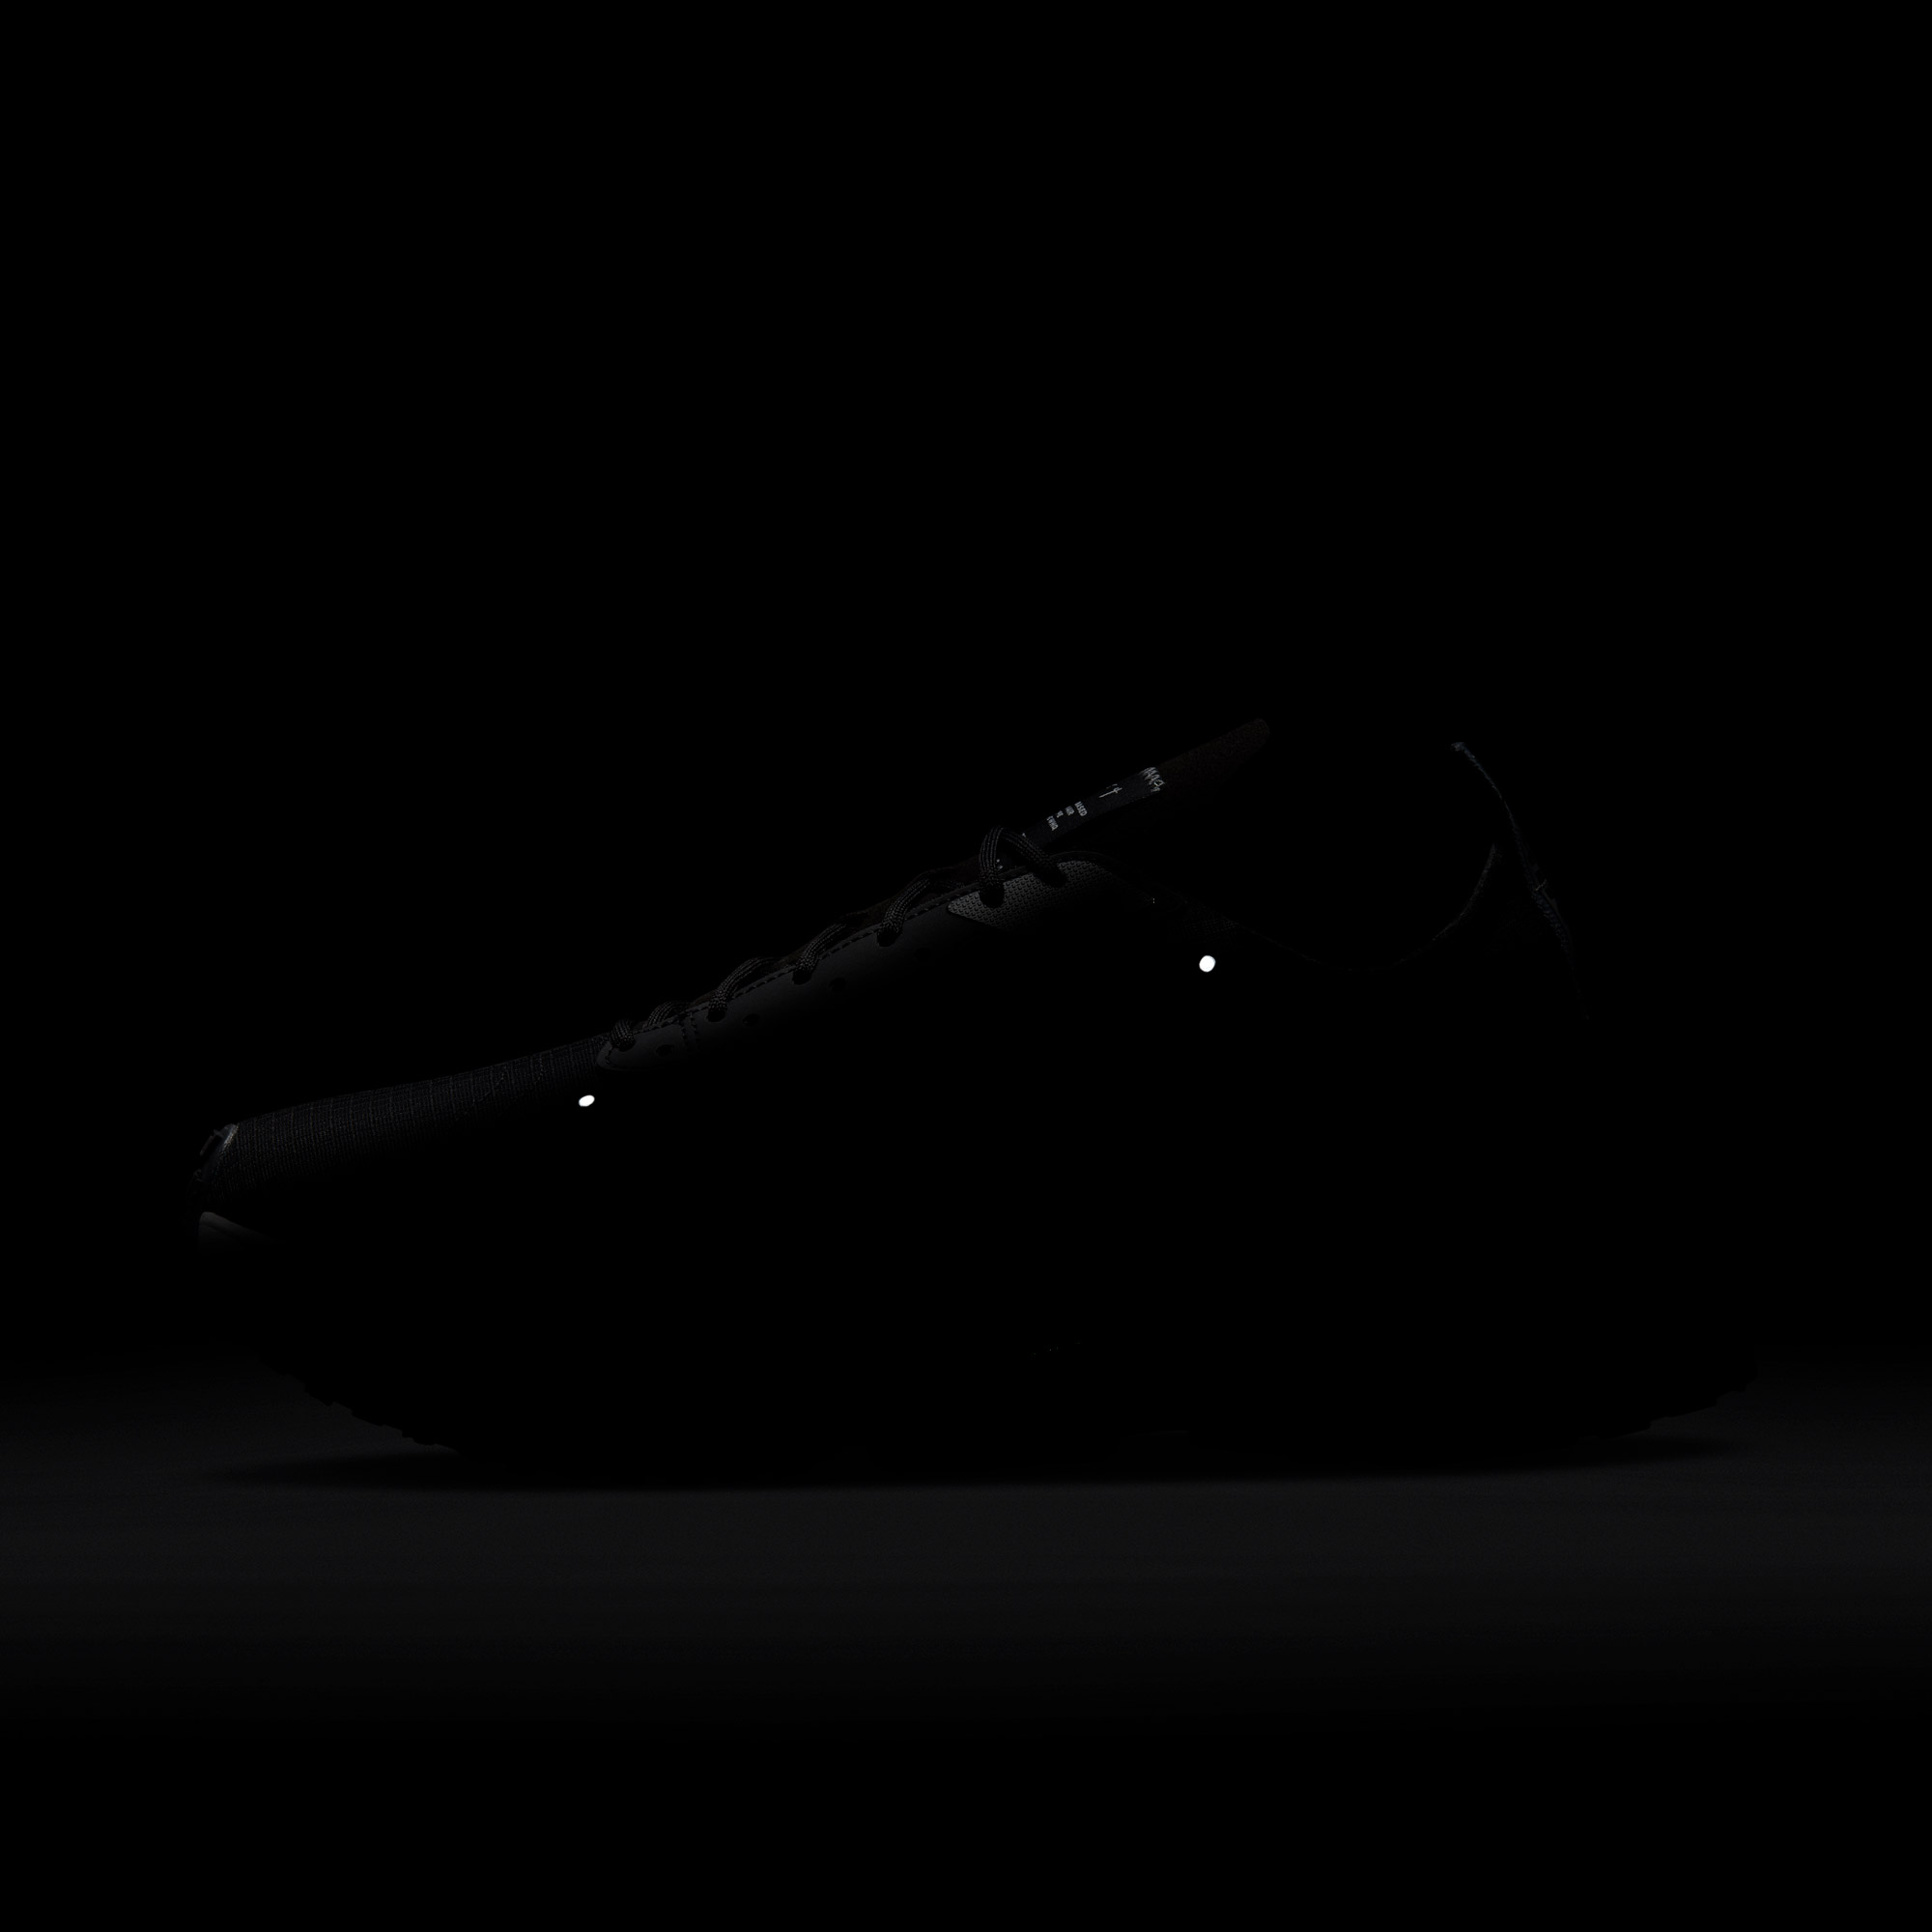 Nike Air Zoom-Type Erkek Siyah/Gri/Gümüş Spor Ayakkabı